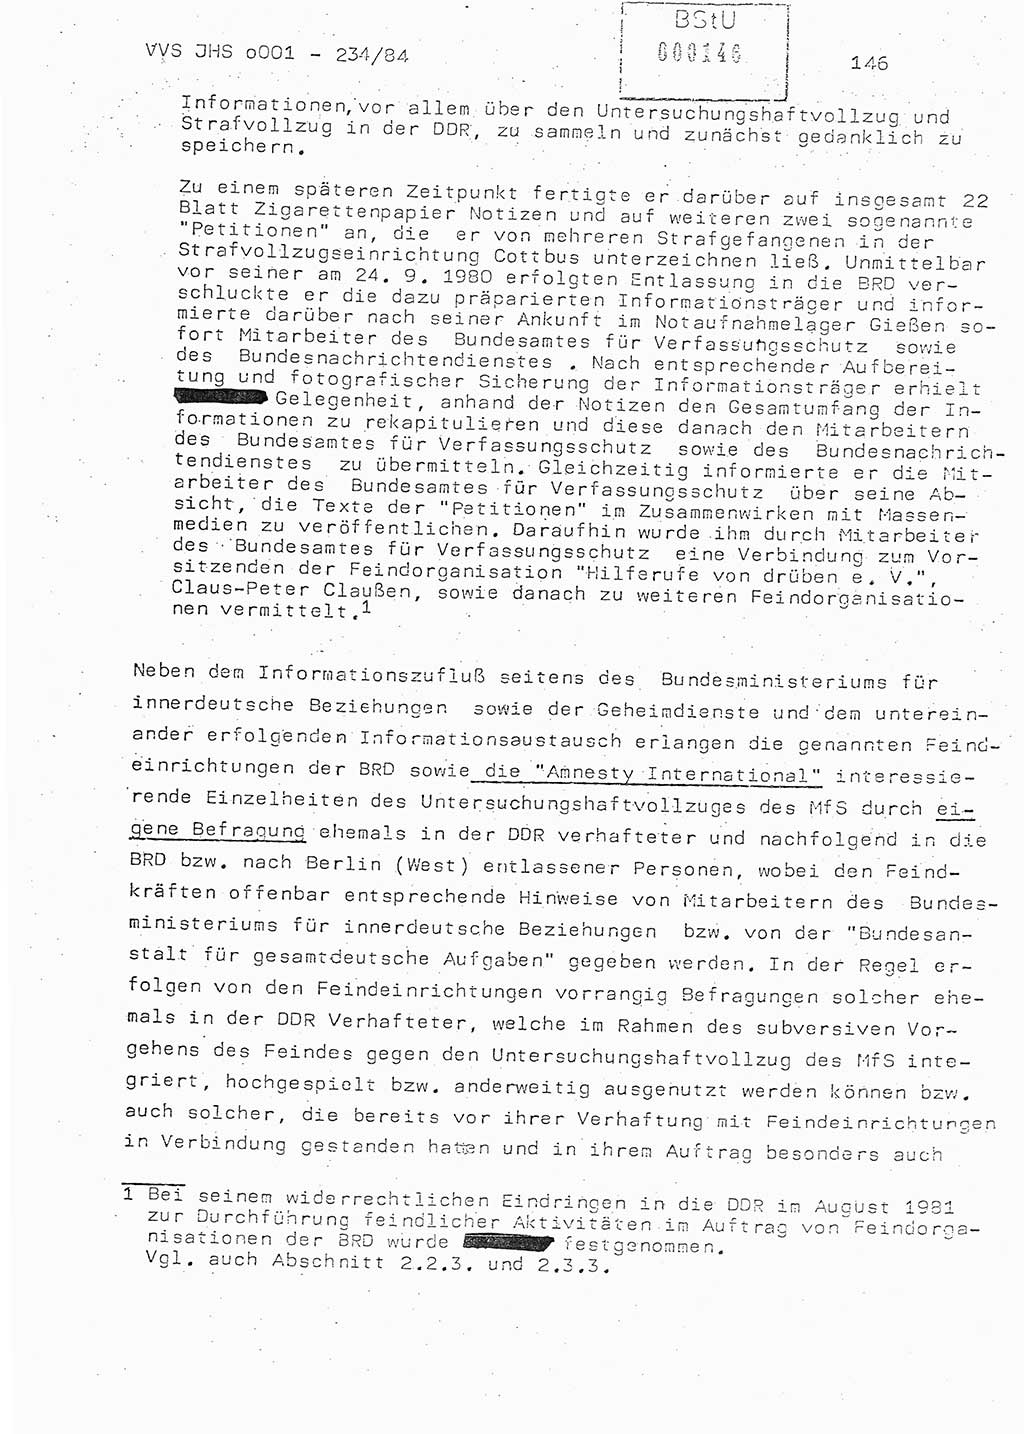 Dissertation Oberst Siegfried Rataizick (Abt. ⅩⅣ), Oberstleutnant Volkmar Heinz (Abt. ⅩⅣ), Oberstleutnant Werner Stein (HA Ⅸ), Hauptmann Heinz Conrad (JHS), Ministerium für Staatssicherheit (MfS) [Deutsche Demokratische Republik (DDR)], Juristische Hochschule (JHS), Vertrauliche Verschlußsache (VVS) o001-234/84, Potsdam 1984, Seite 146 (Diss. MfS DDR JHS VVS o001-234/84 1984, S. 146)